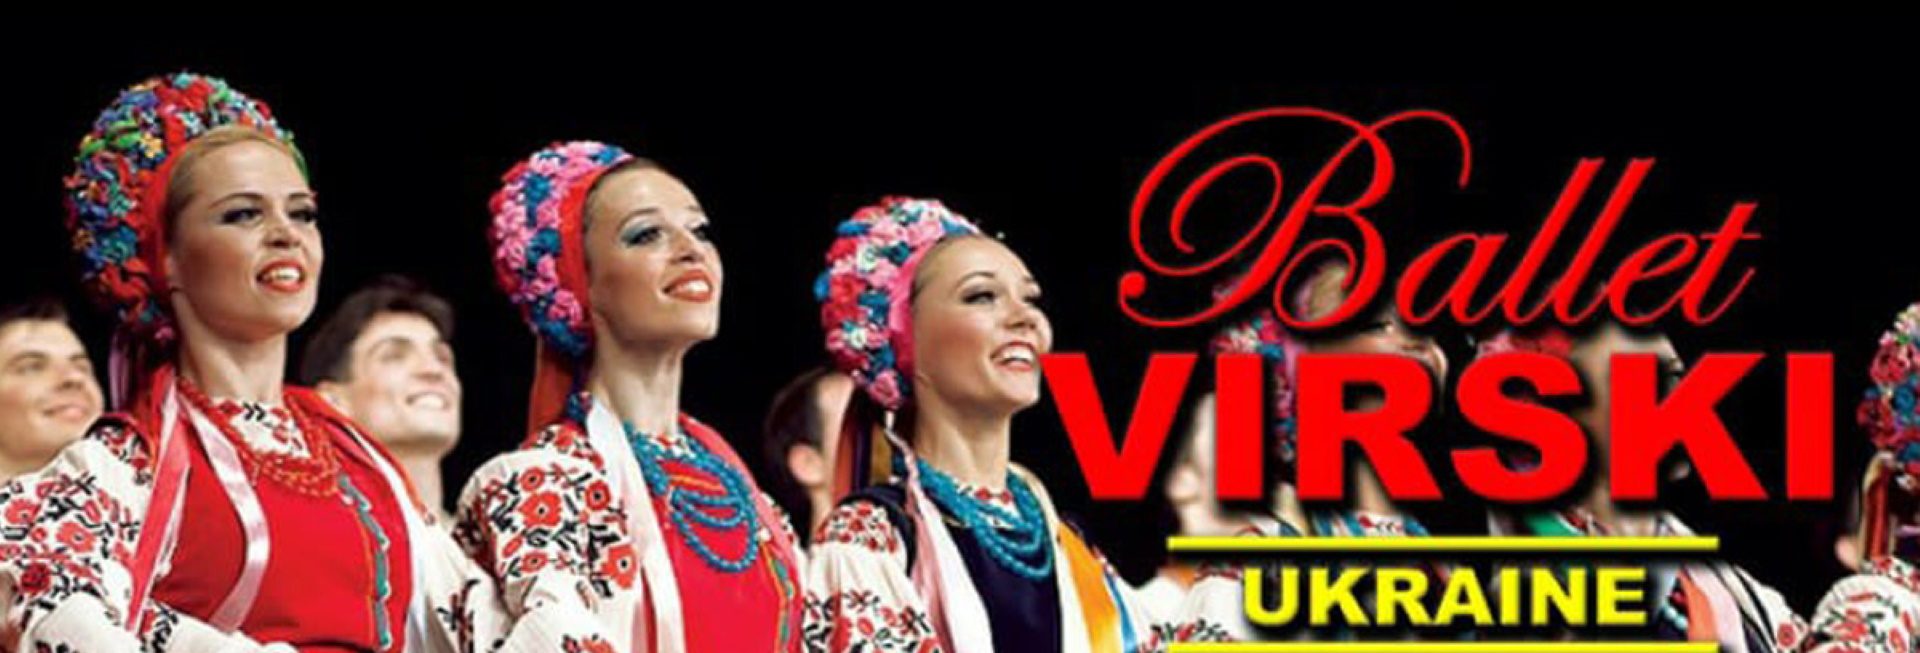 Plakat graficzny zapraszający do Olsztyna na występ Narodowego Baletu Ukrainy VIRSKI, który odbędzie się w Filharmonii Warmińsko-Mazurskiej w Olsztynie. 